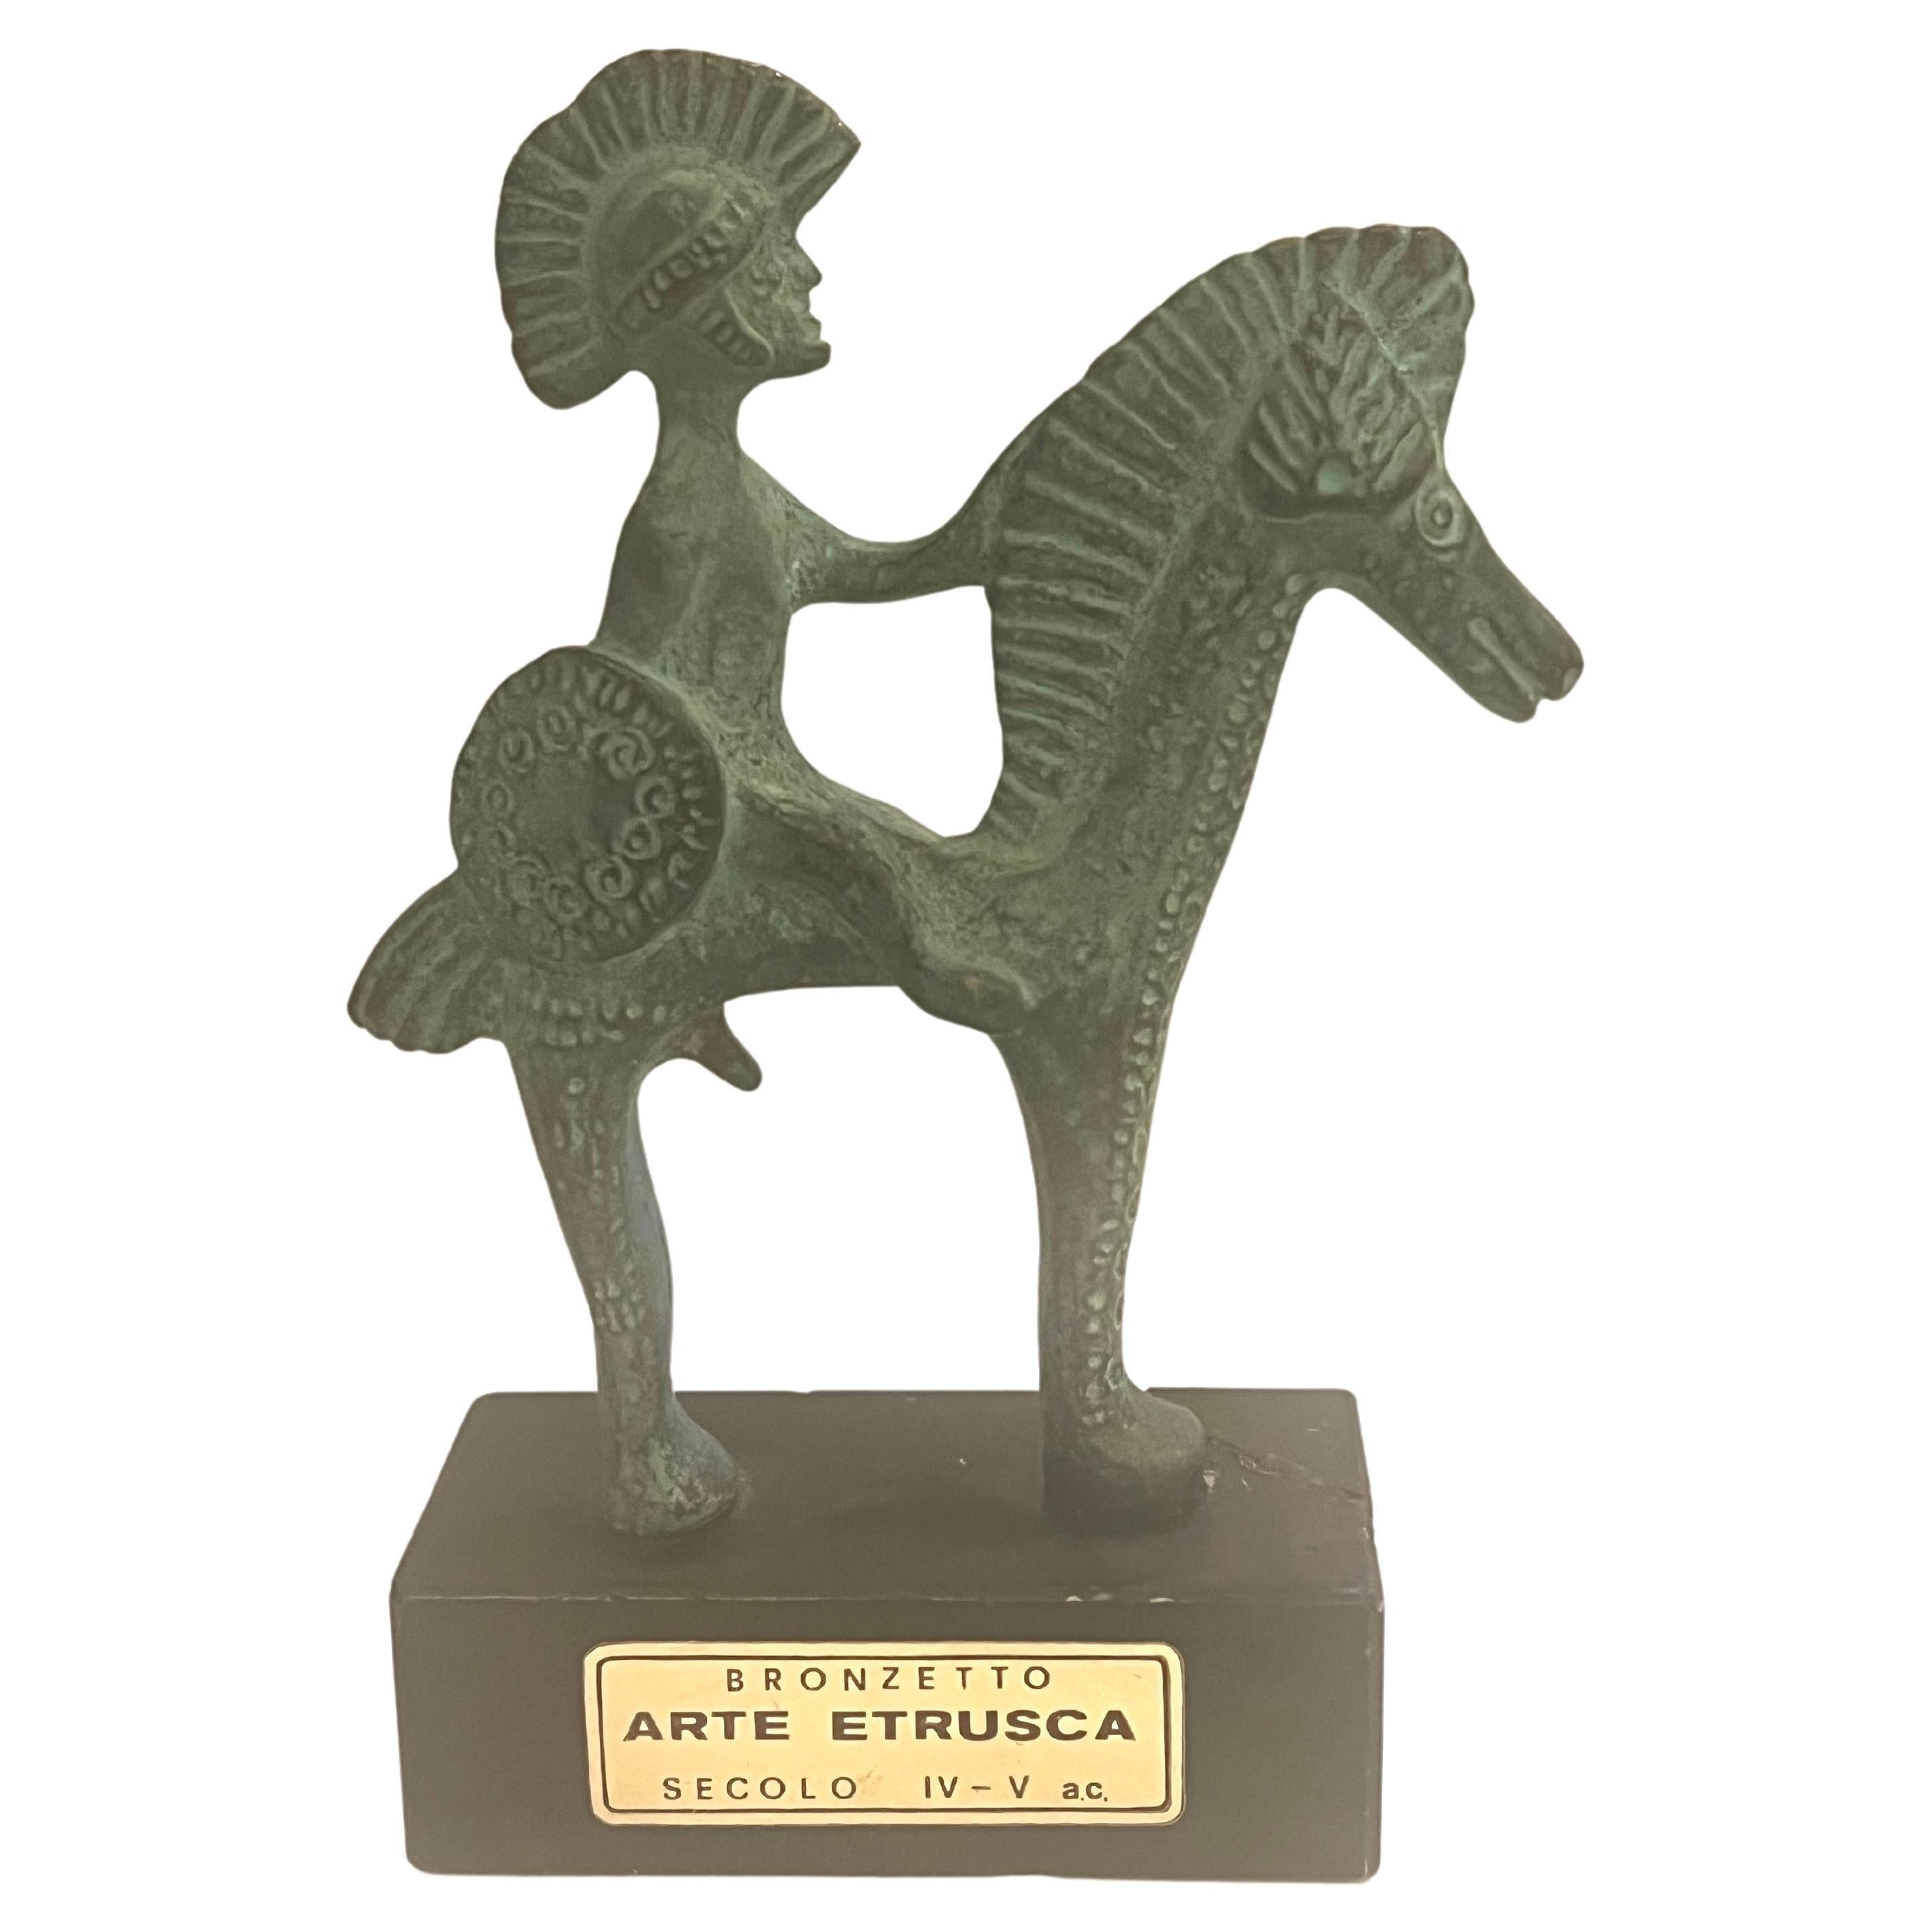 Kleine etruskische Reproduktionsskulptur aus Bronze, 1970er Jahre, Italien